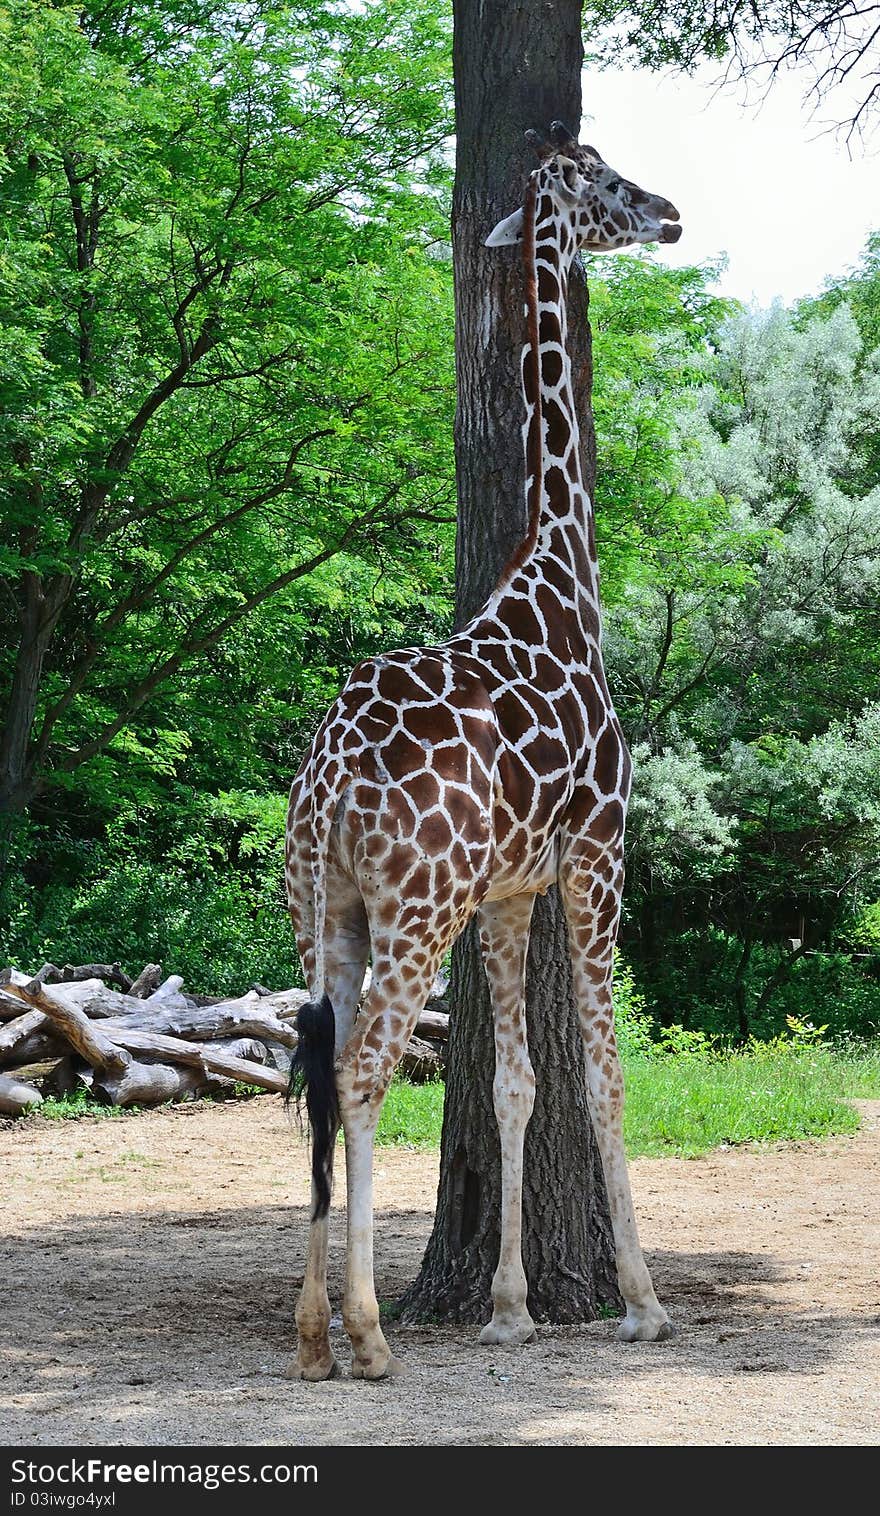 Tall giraffe standing next to tall tree. Tall giraffe standing next to tall tree